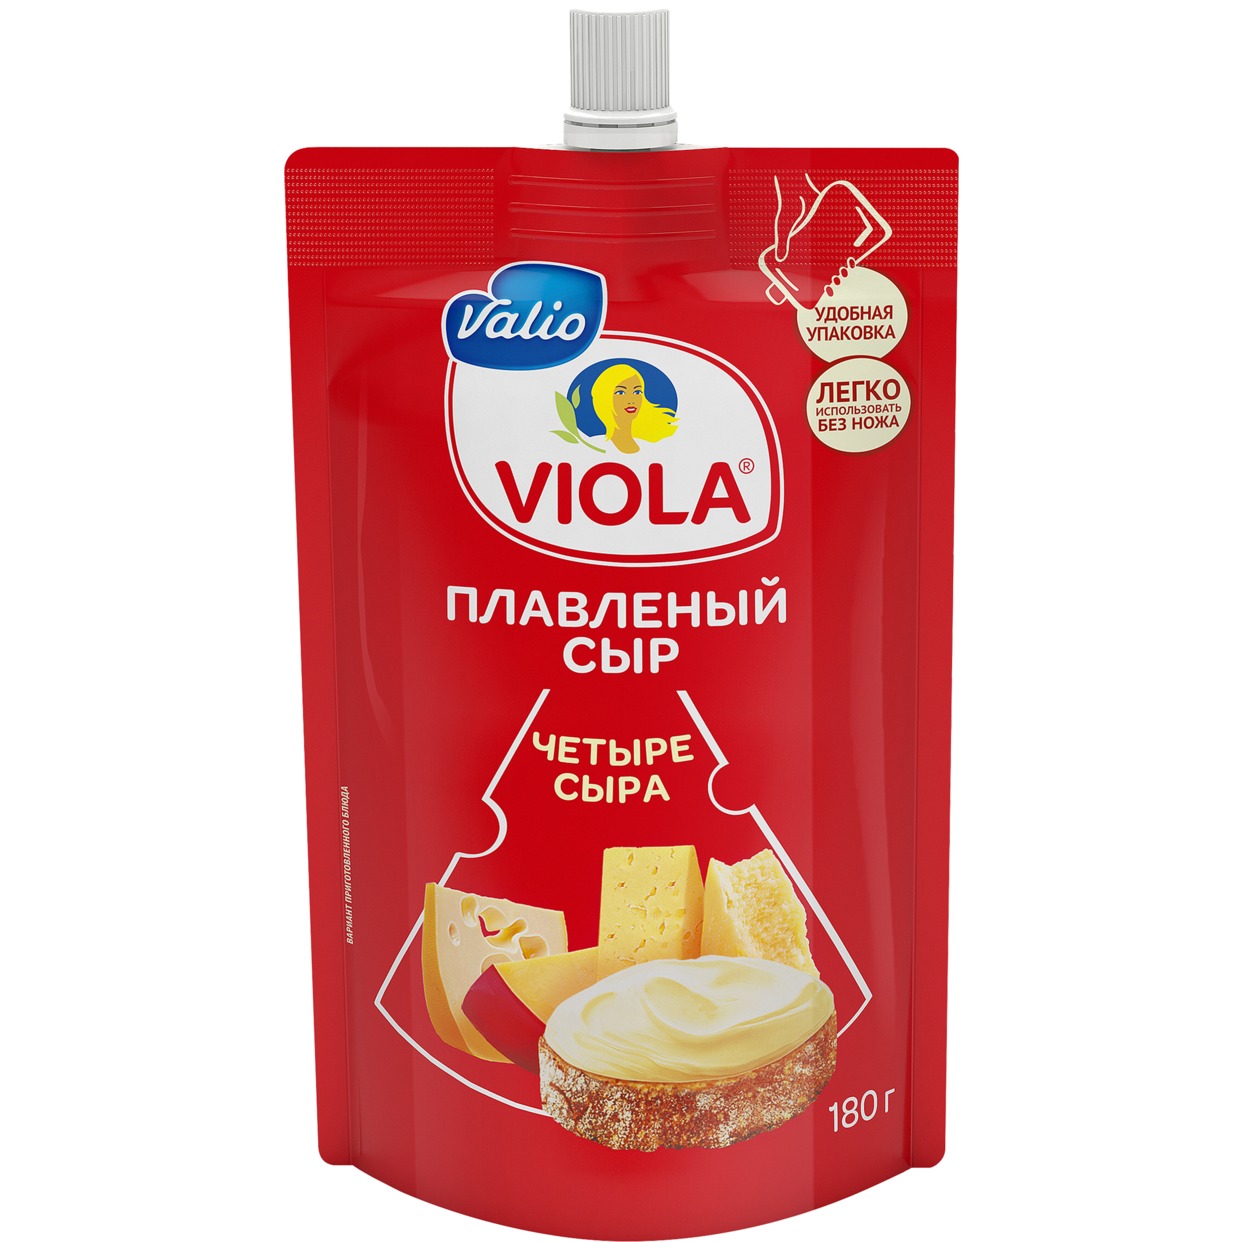 Сыр Виола 4 Сыра, Valio, 180 г